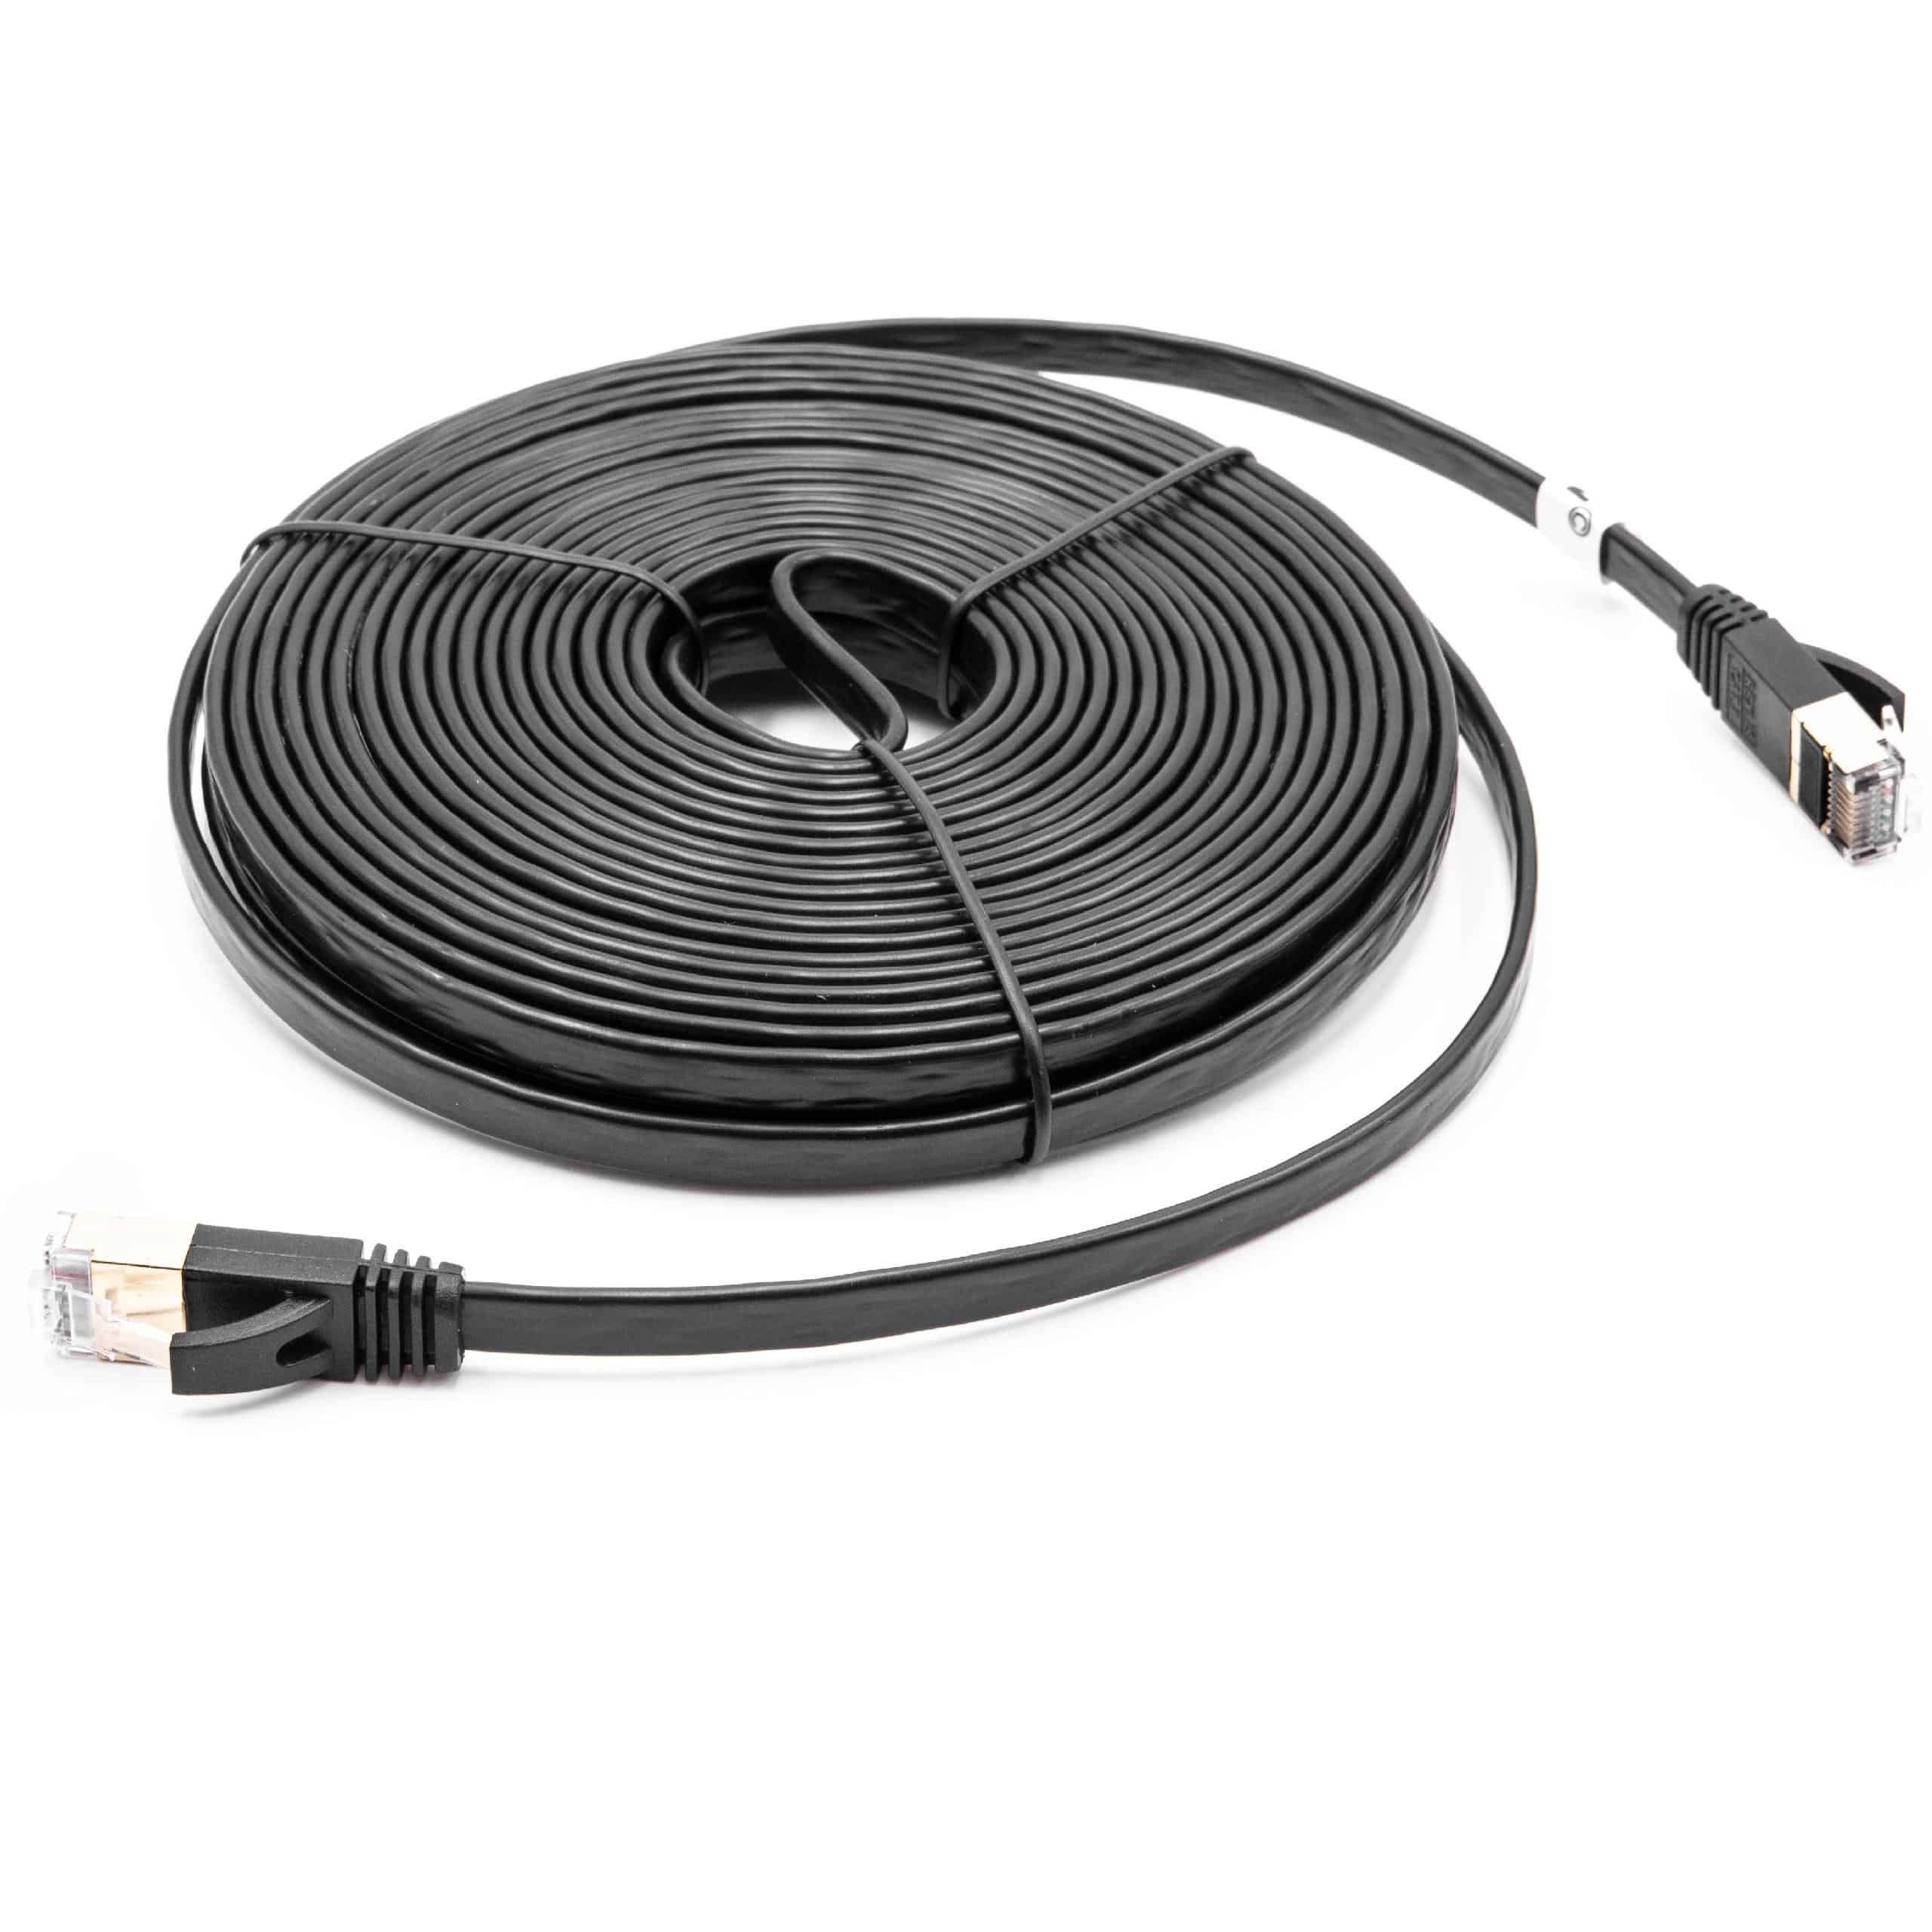 Ethernet LAN Patch Gigabit Network Cable CAT.7 10m black flat design, Internet Modem Cable